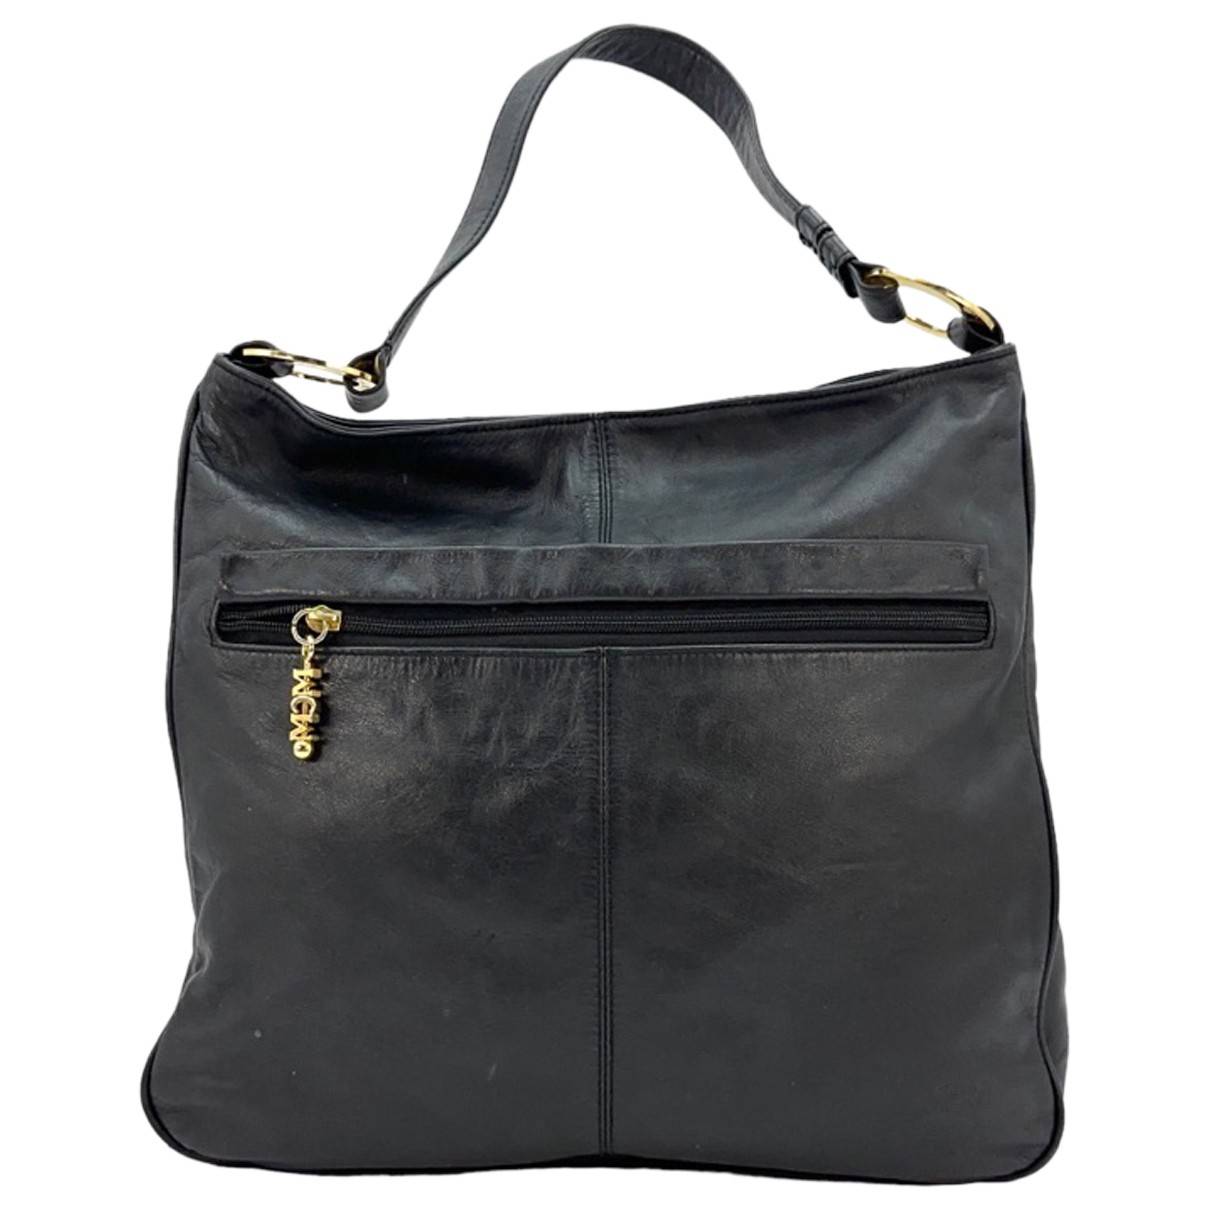 Leather handbag MCM - Vintage